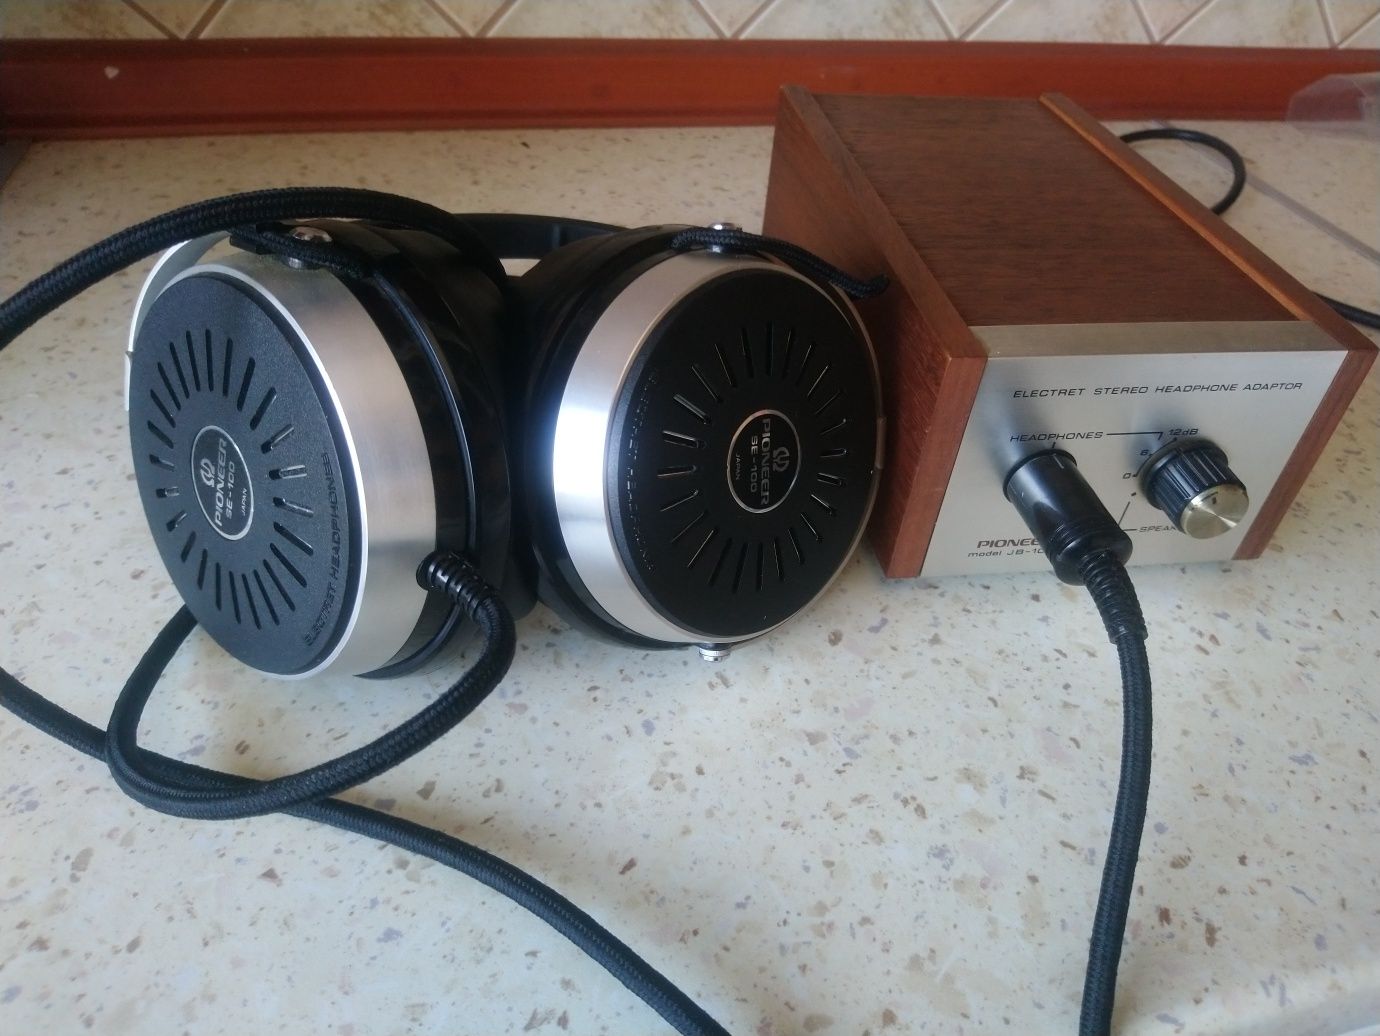 Słuchawki nauszne + wzmacniacz PIONEER SE-100 + PIONEER JB-100 (1972r)